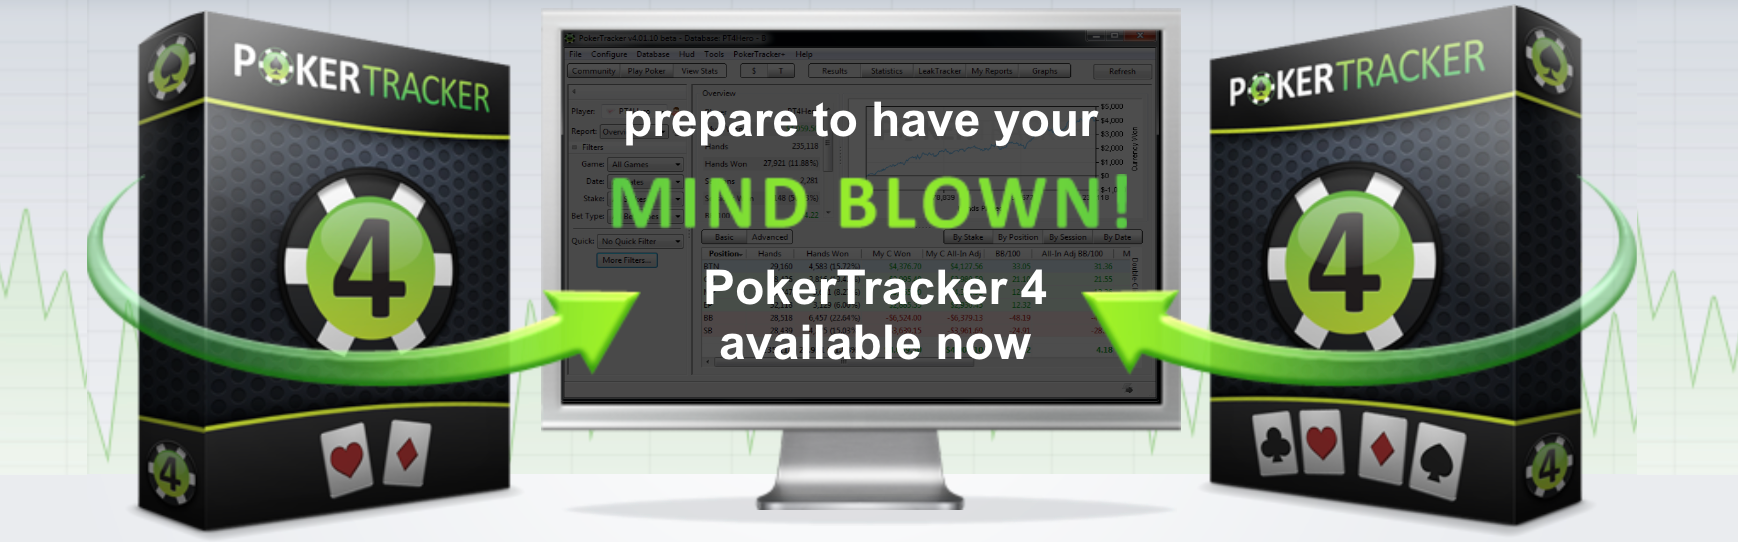 Pockertracker 4 poker tool banner 